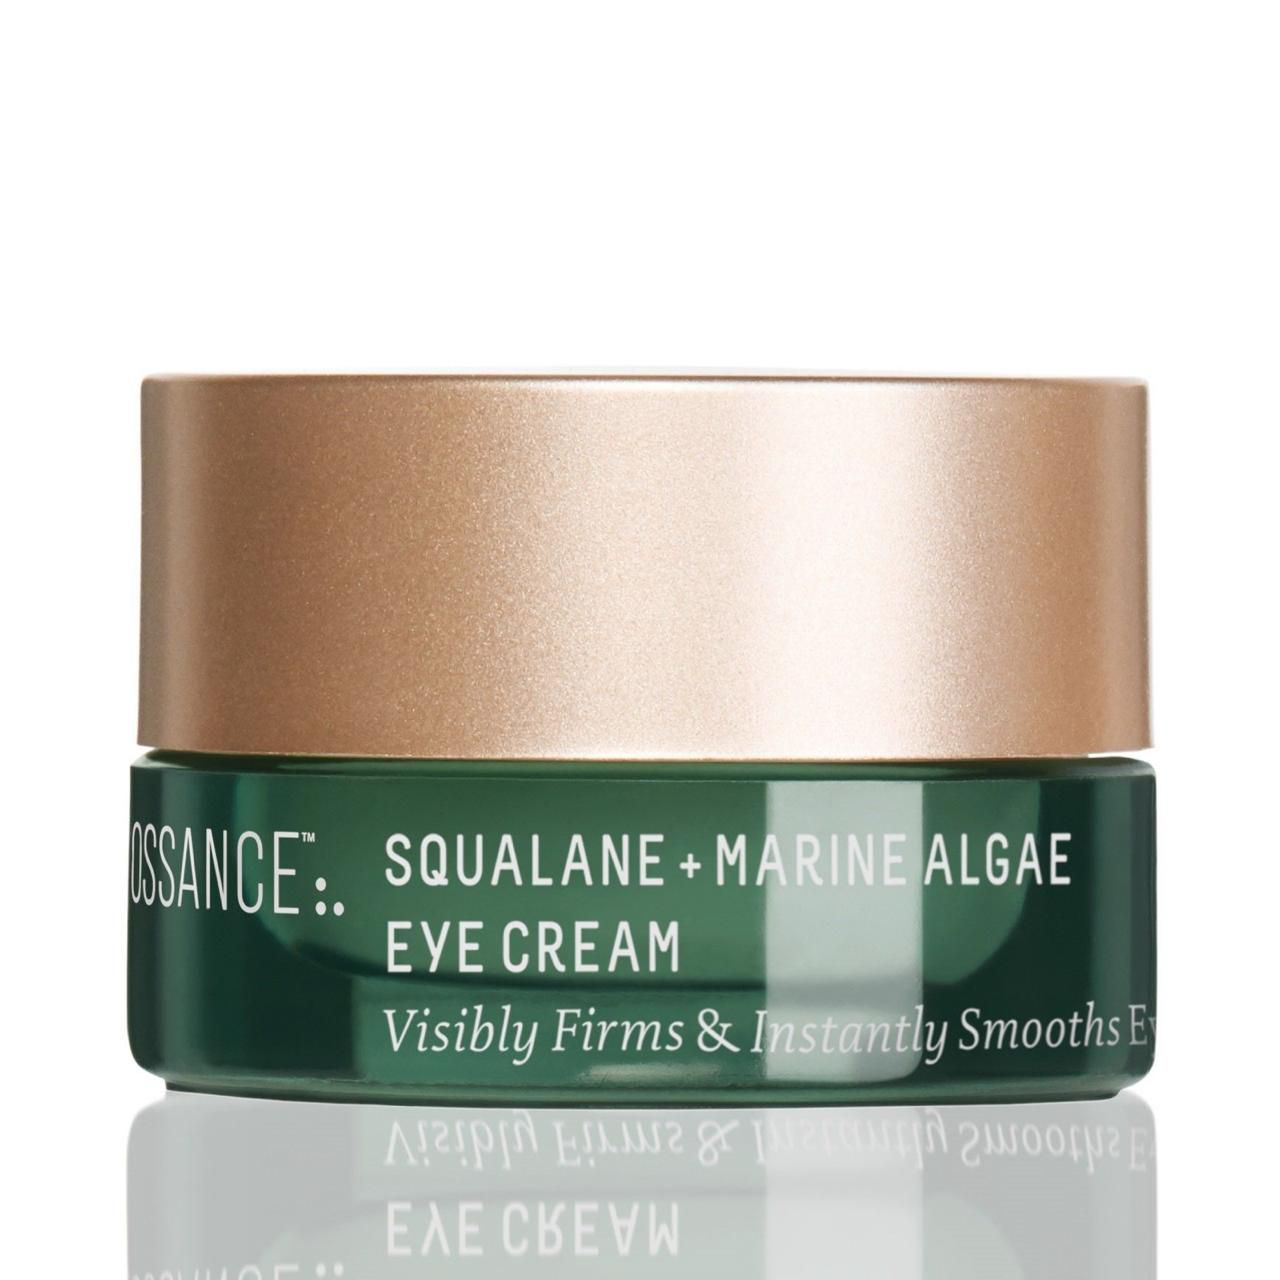 Biossance Squale + Marine Algae Eye Cream - Consumos da Martina